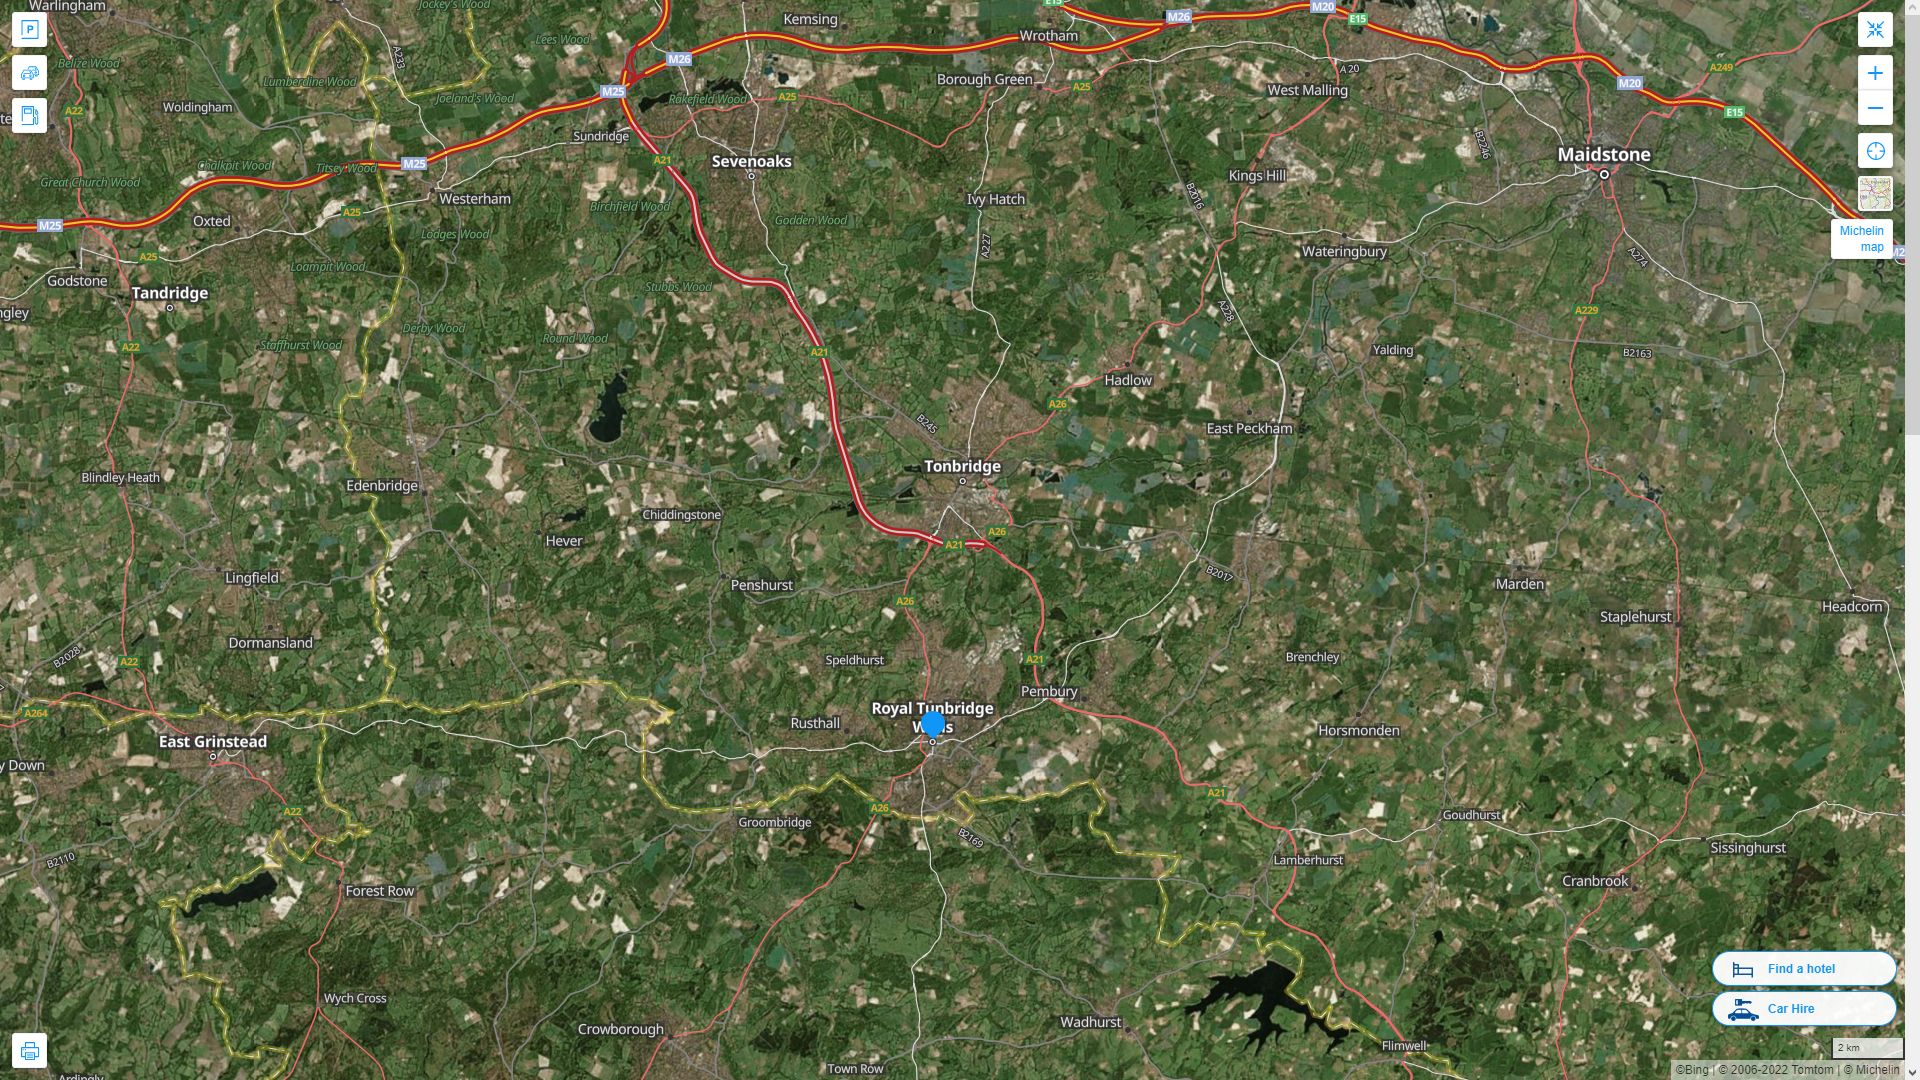 Royal Tunbridge Wells Royaume Uni Autoroute et carte routiere avec vue satellite